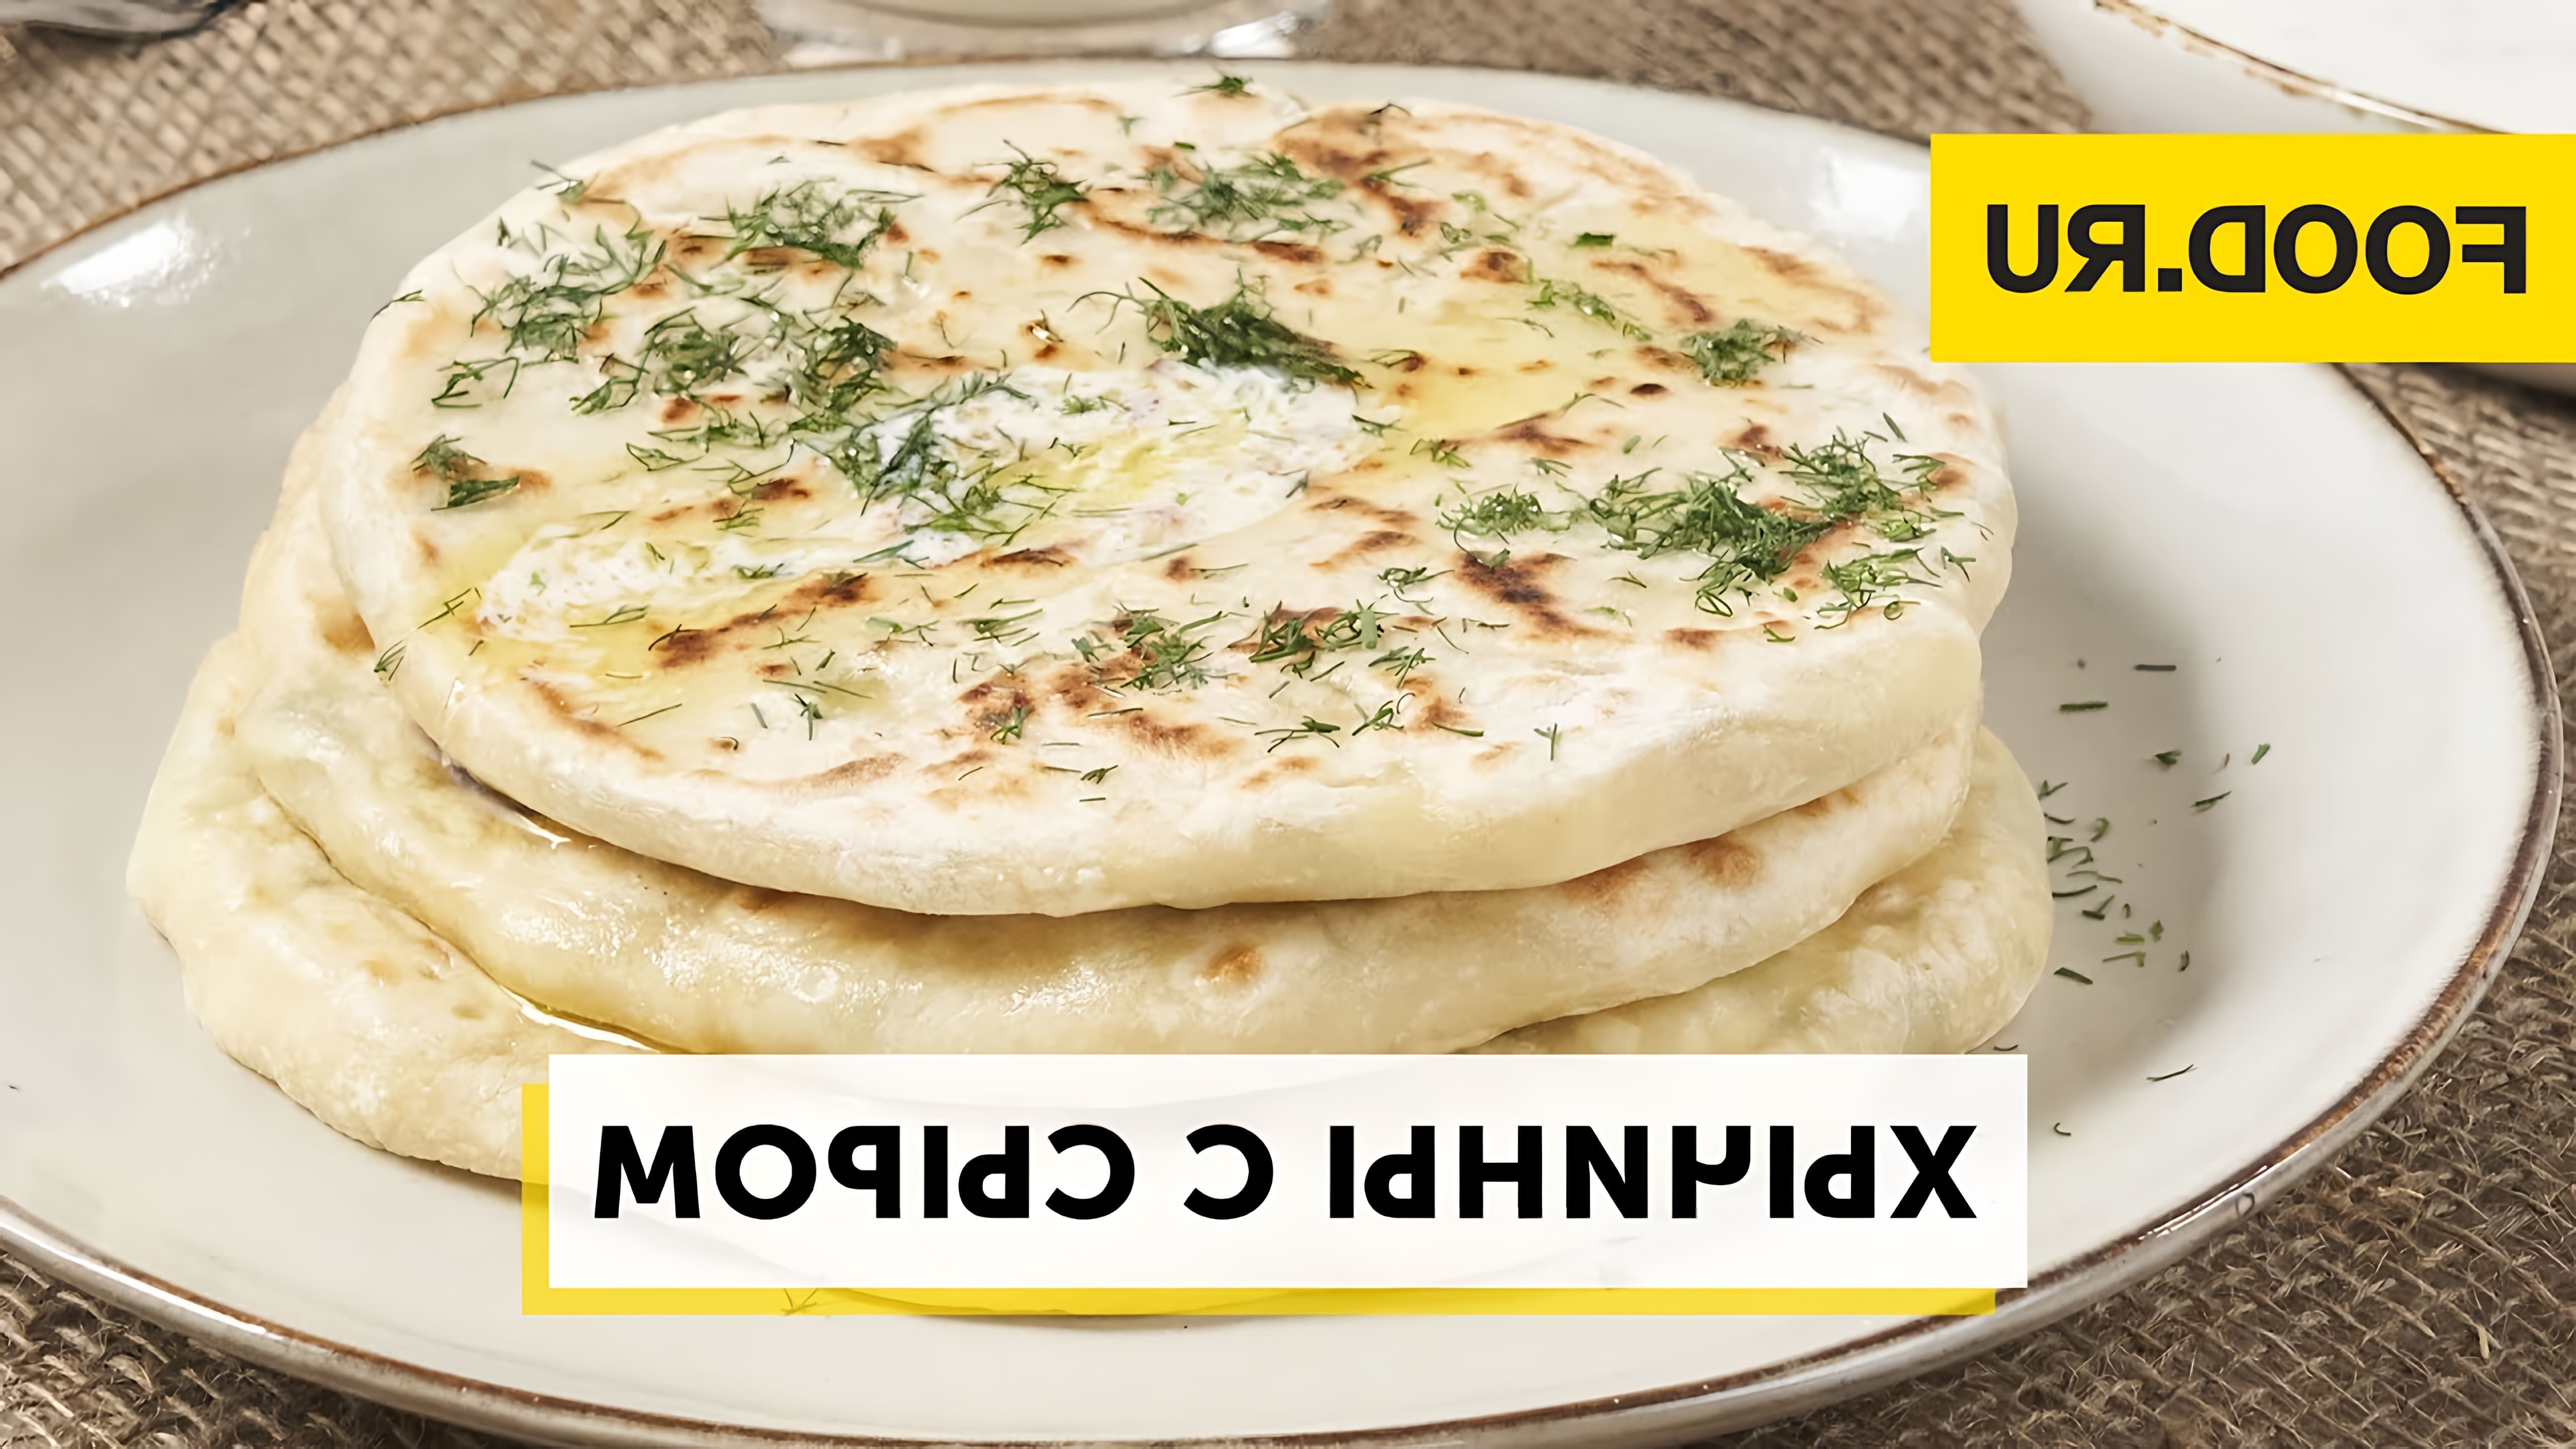 Хычины с сыром - это вкусное и простое блюдо, которое можно приготовить дома